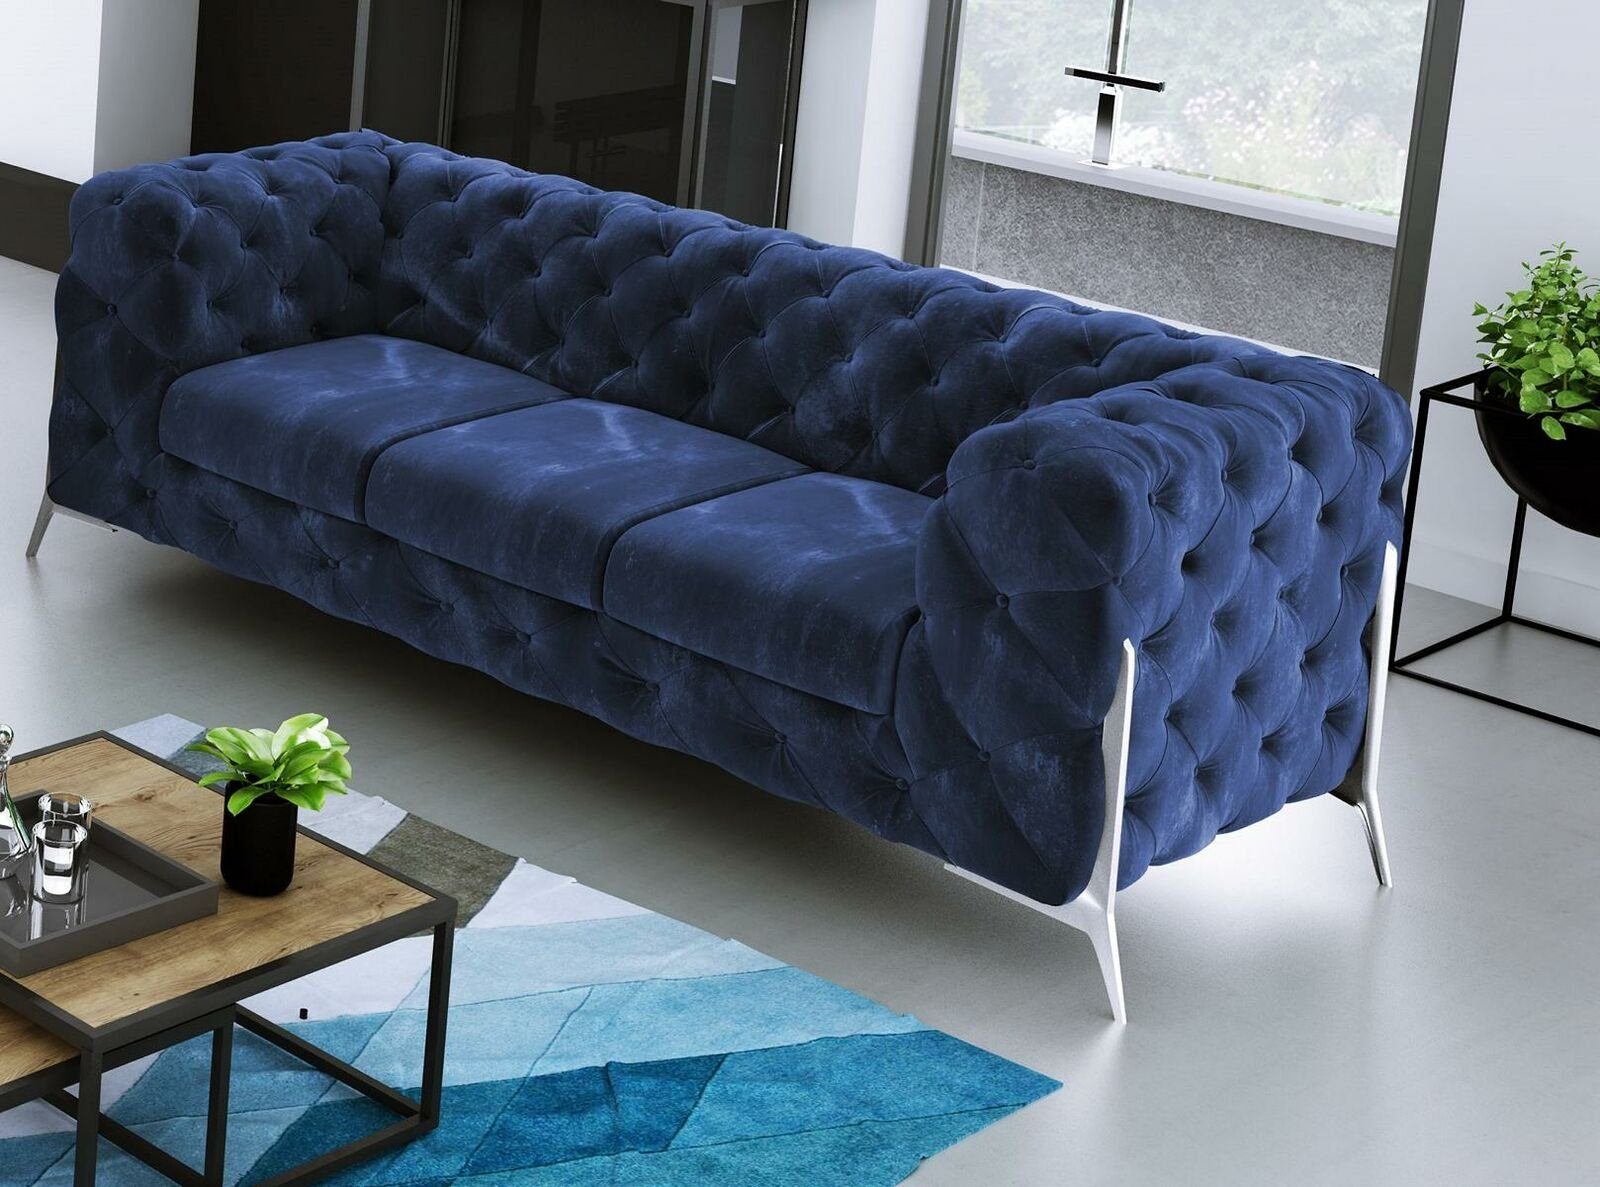 JVmoebel Sofa Europe Polster Dreisitzer Moderner Luxus Neu, in Blau Brauner Chesterfield Made Couch